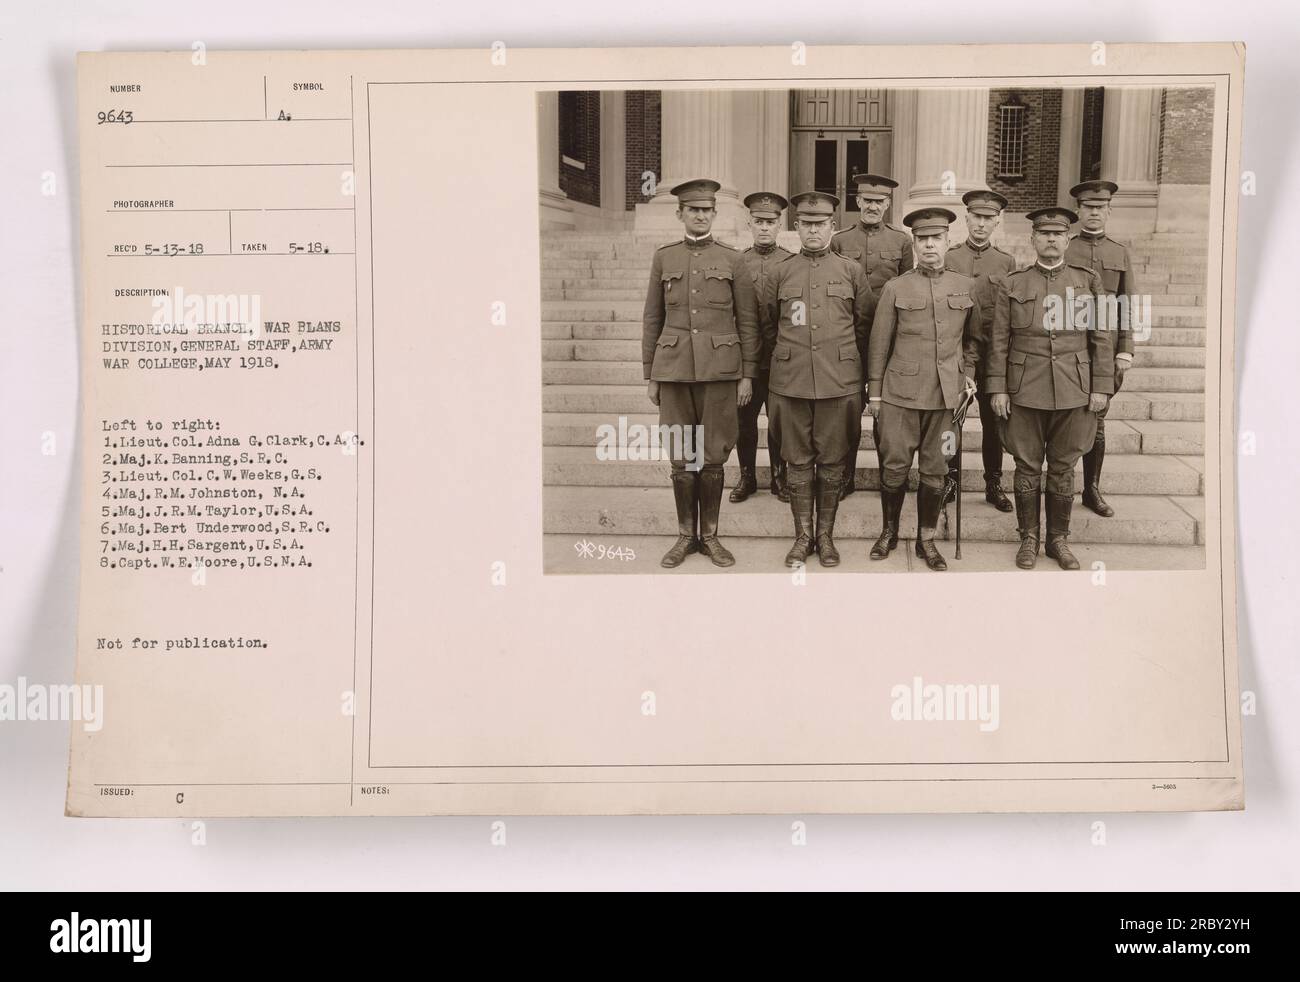 Oberstleutnant Adna G. Clark vom C.A.C., Oberstleutnant K. Banning vom S.R.C., Oberstleutnant C. W. Weeks vom G.S., Major R. M. Johnston vom N.A., Major J. R.M. Taylor vom U.A., Major Bert Underwood vom S.R.C., Major H. H. Sargent aus den USA und Hauptmann W. E. Moore aus der US N.A., fotografiert im Mai 1918. Stockfoto